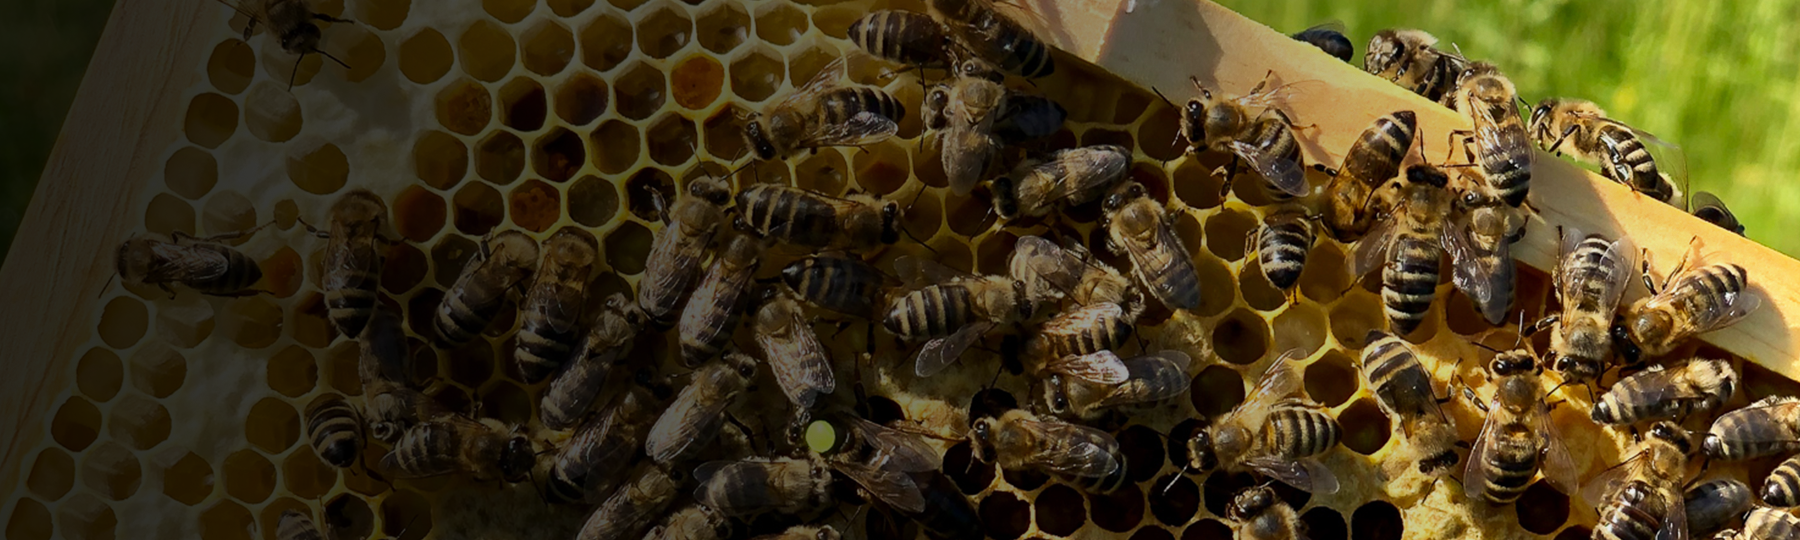 Bienenvölker auf dem Firmengelände